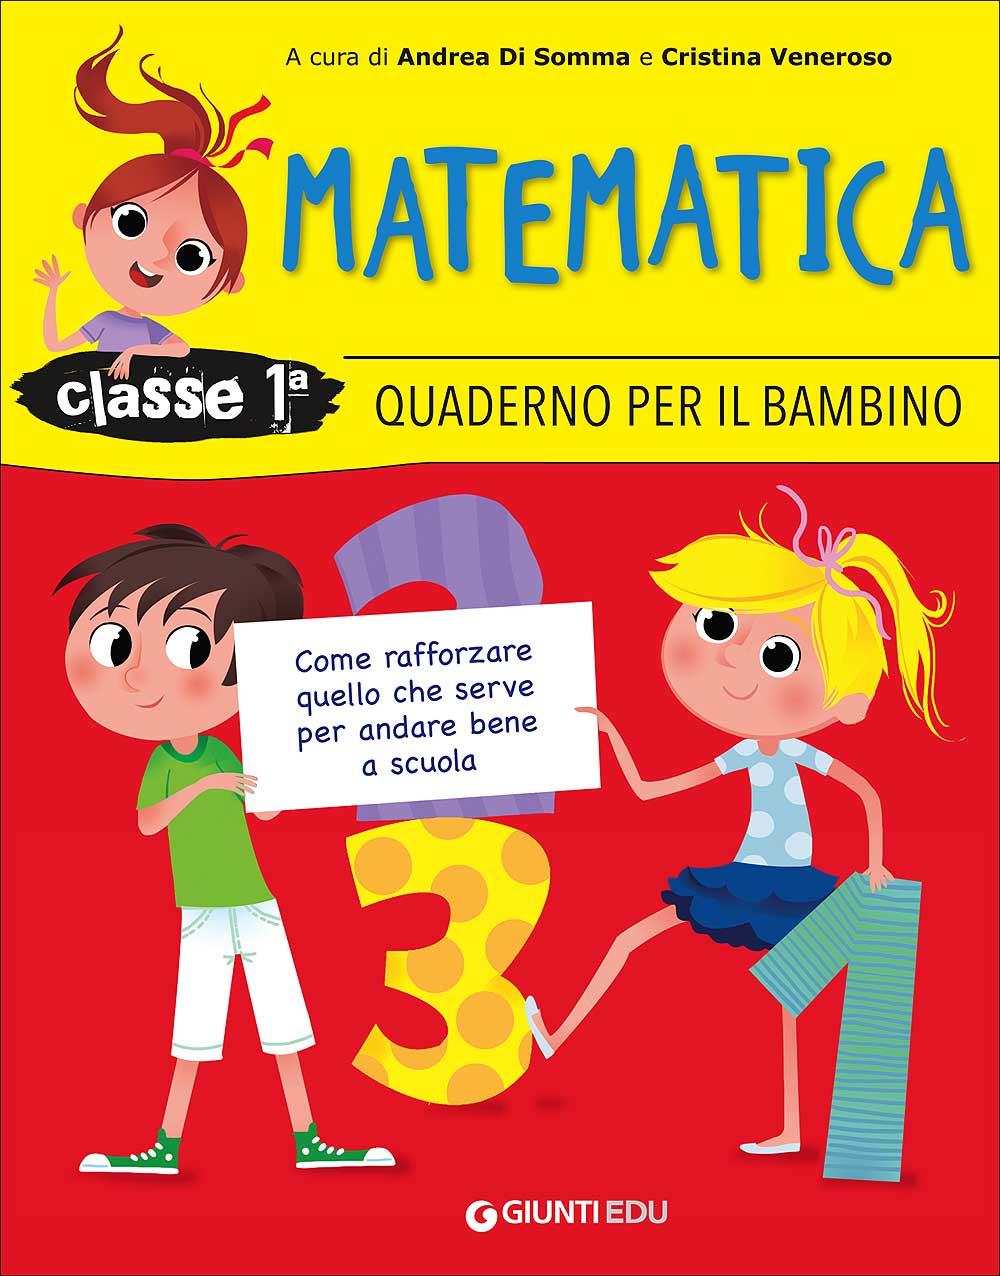 Quaderno per il bambino - Matematica 1. Come rafforzare quello che serve per andare bene a scuola